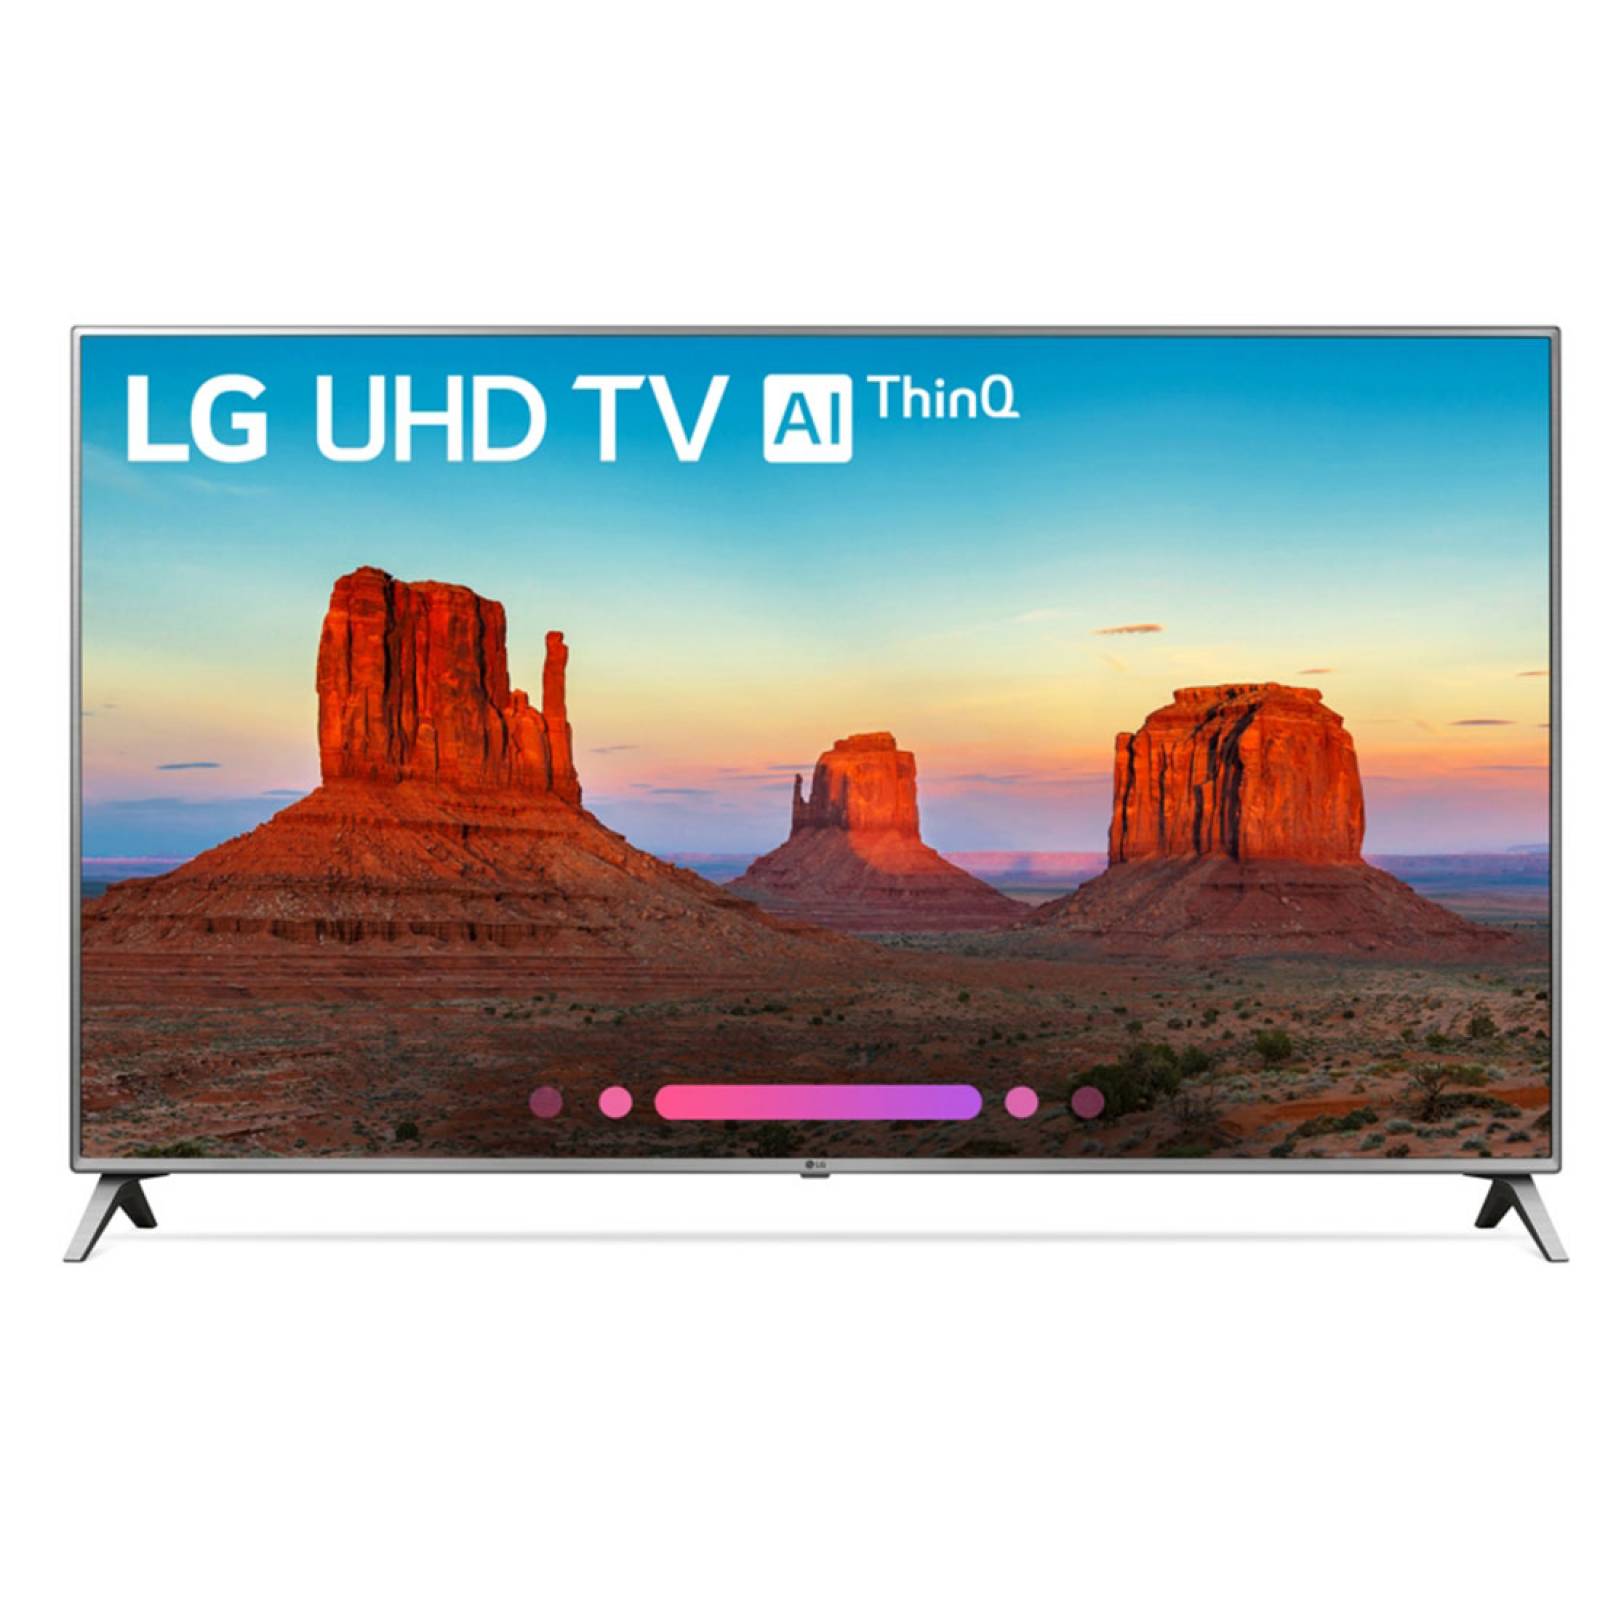 Smart TV LED HDR Full HD 4K Quad Core 120Hz 55UK6500AUA LG